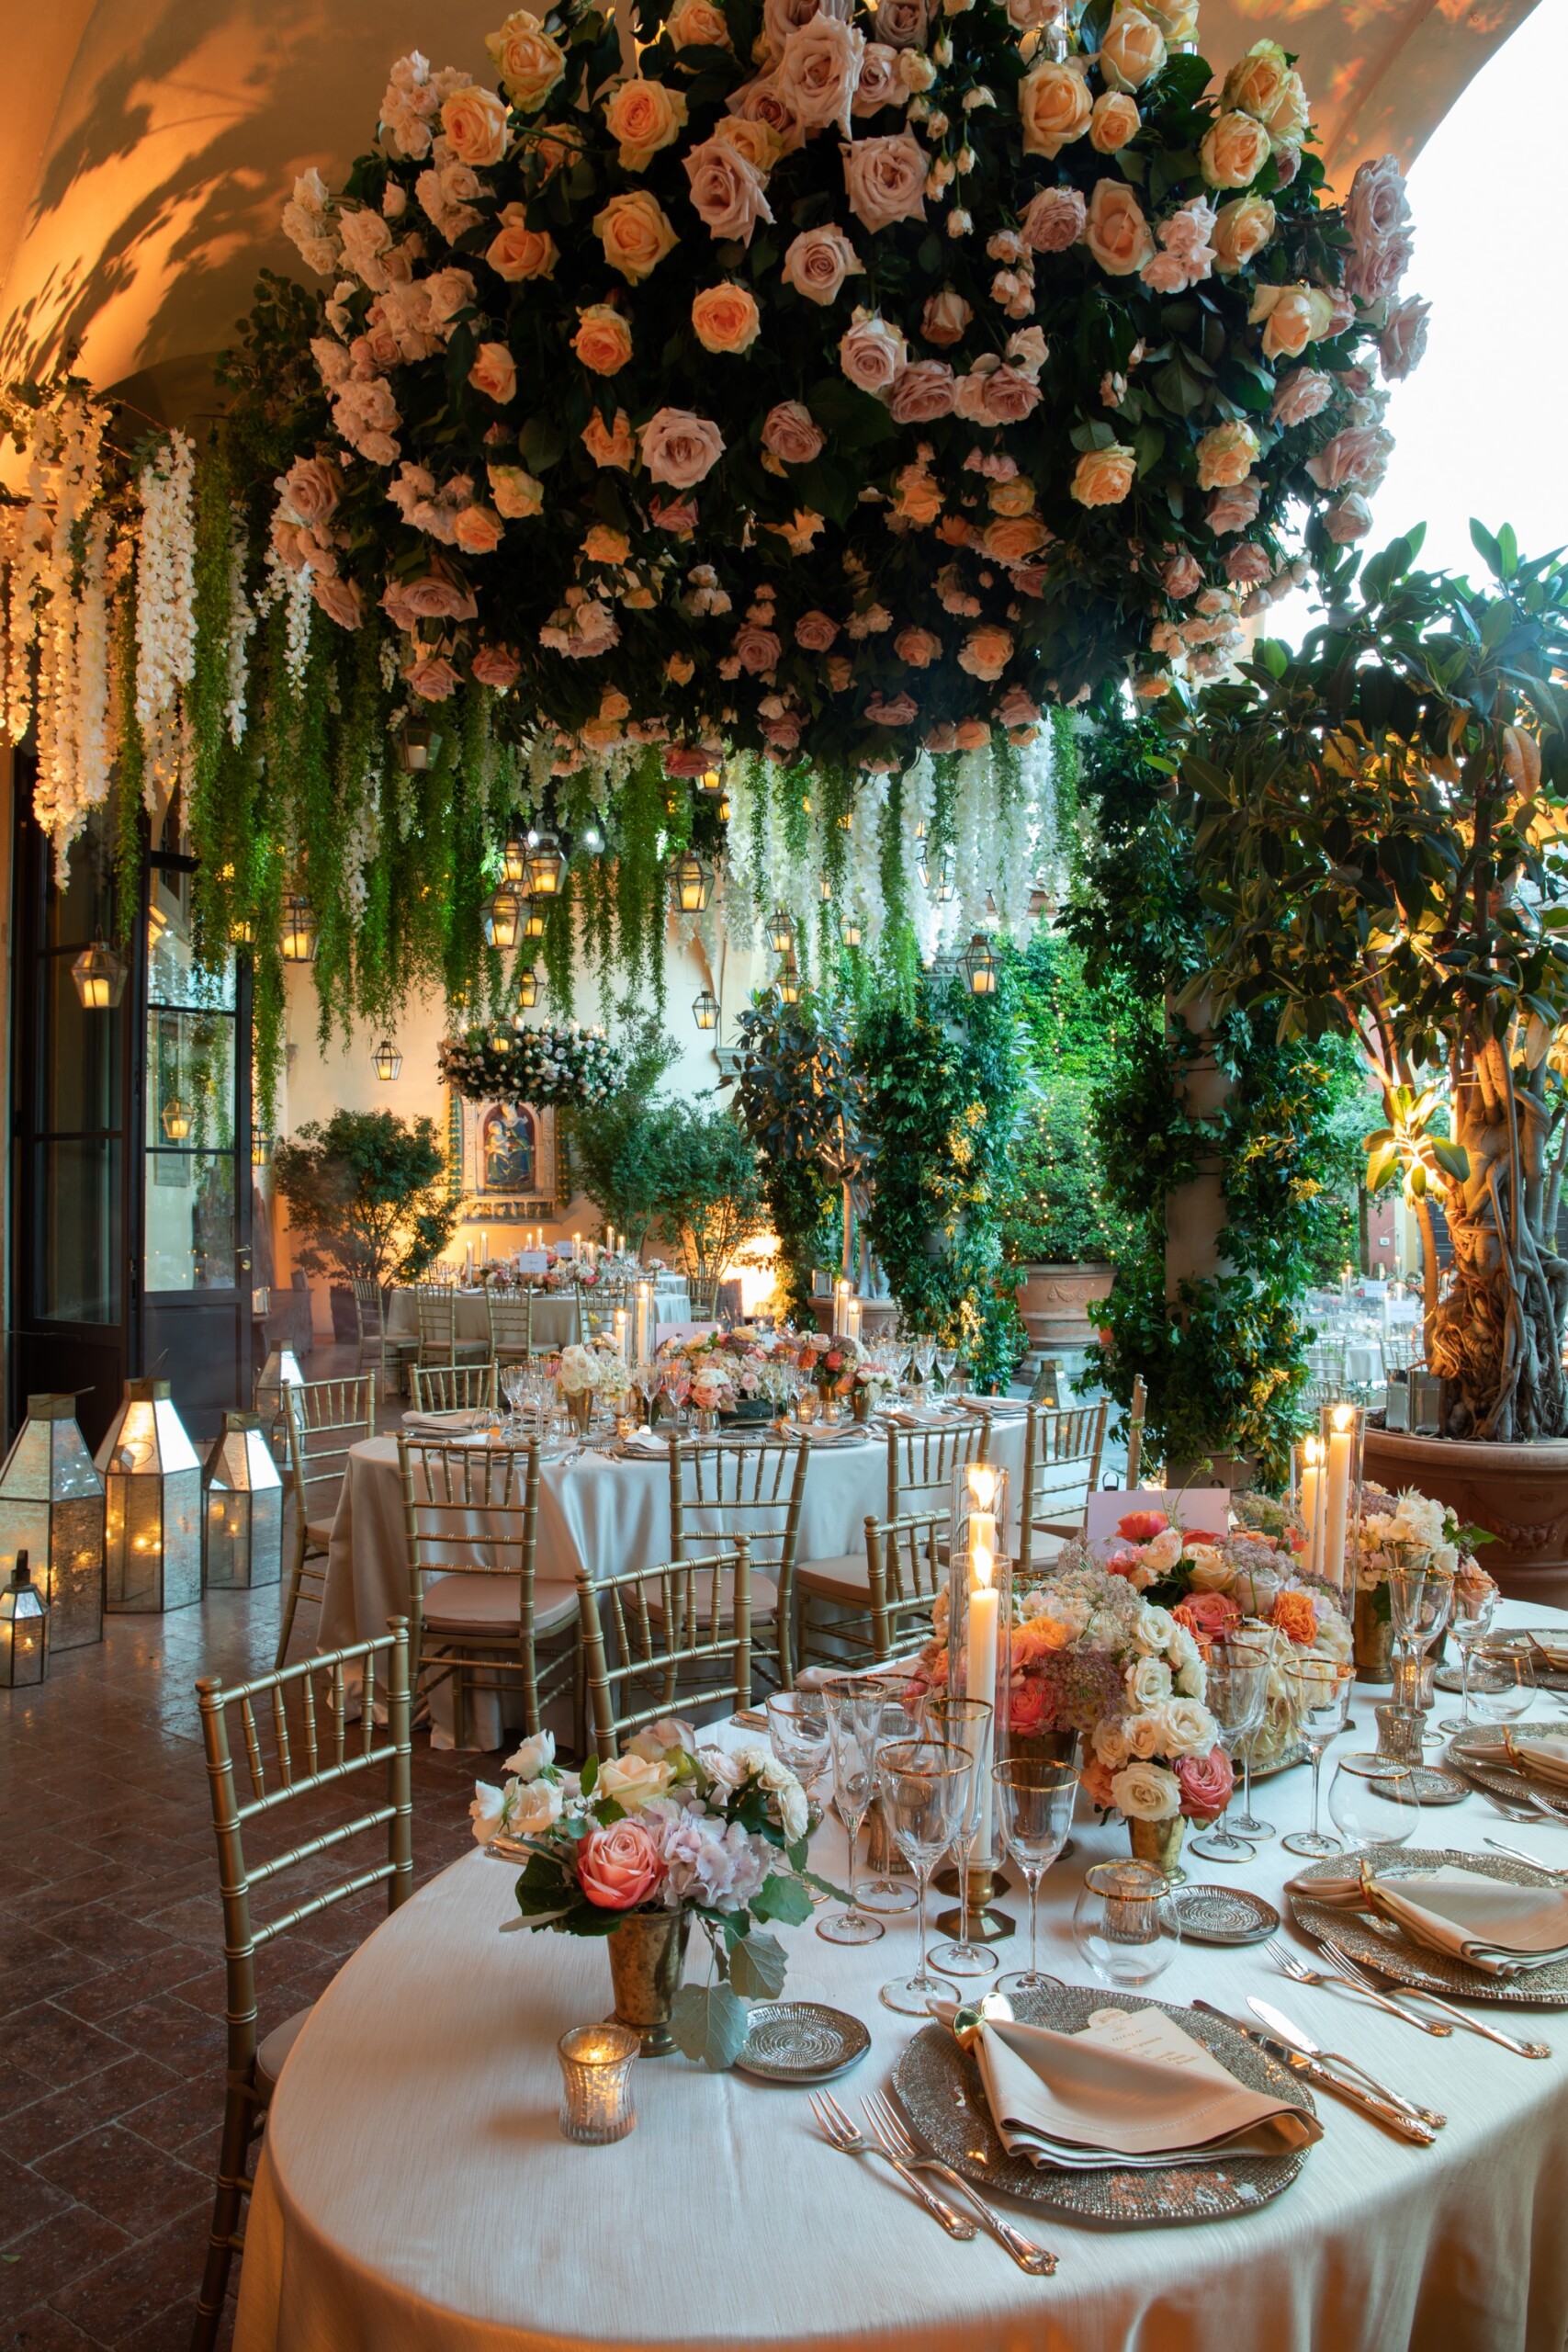 Hidden garden style decor for an exclusive wedding in Italy